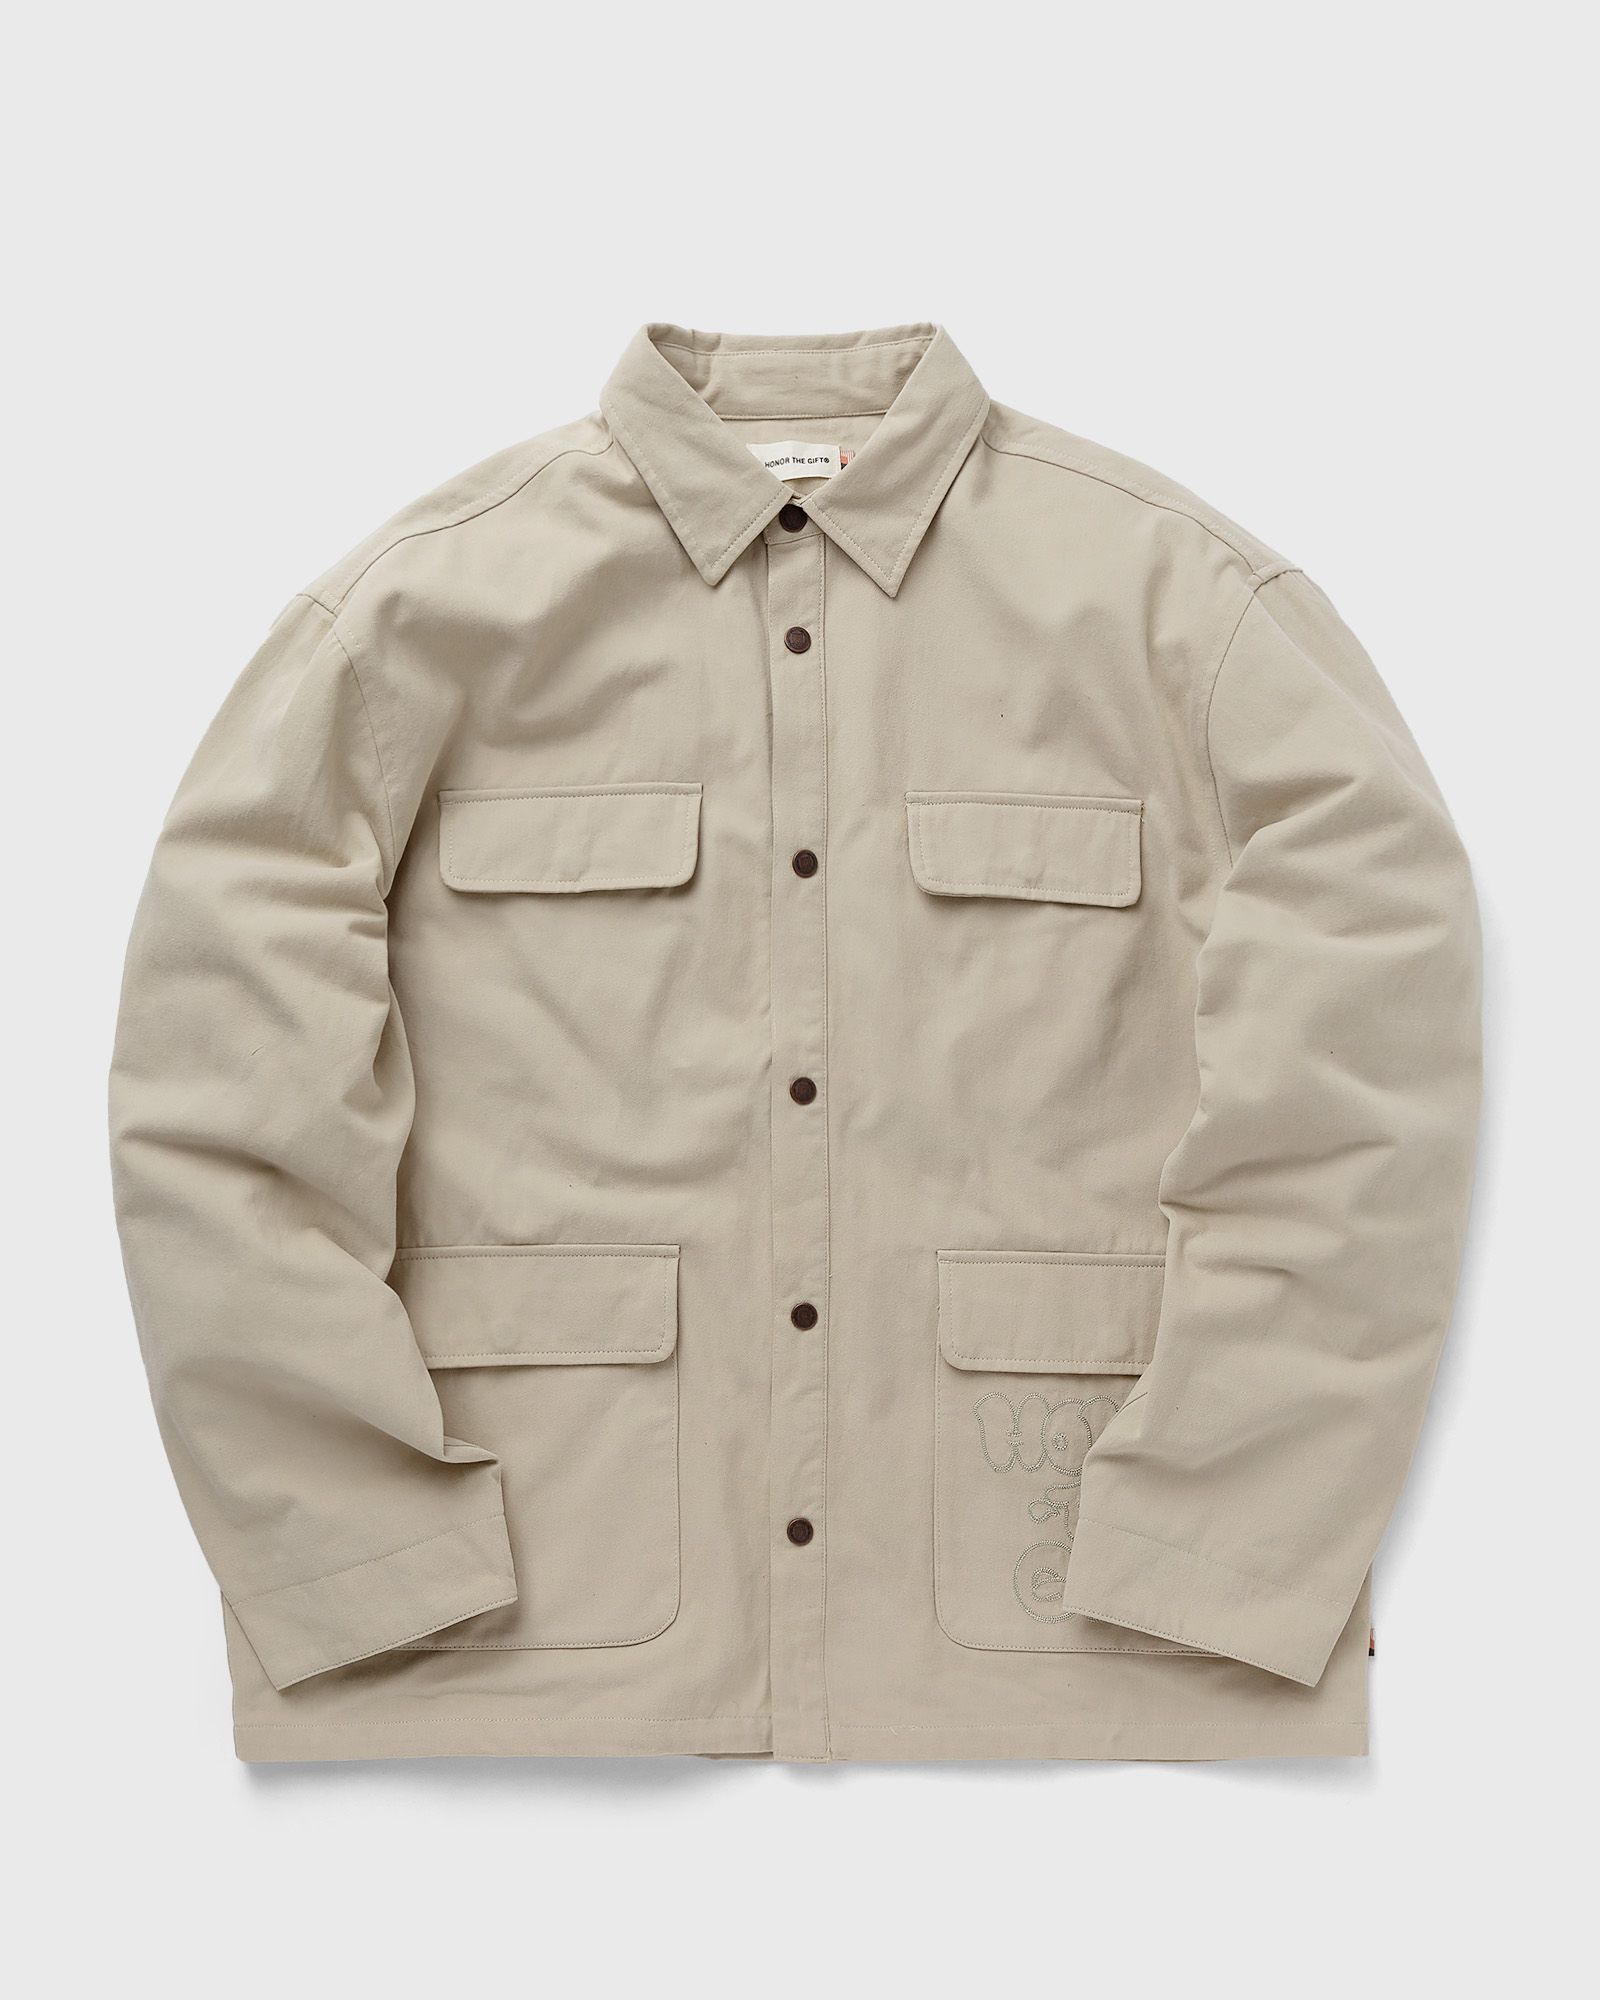 Honor The Gift - amp'd chore jacket men coats|windbreaker beige in größe:xxl